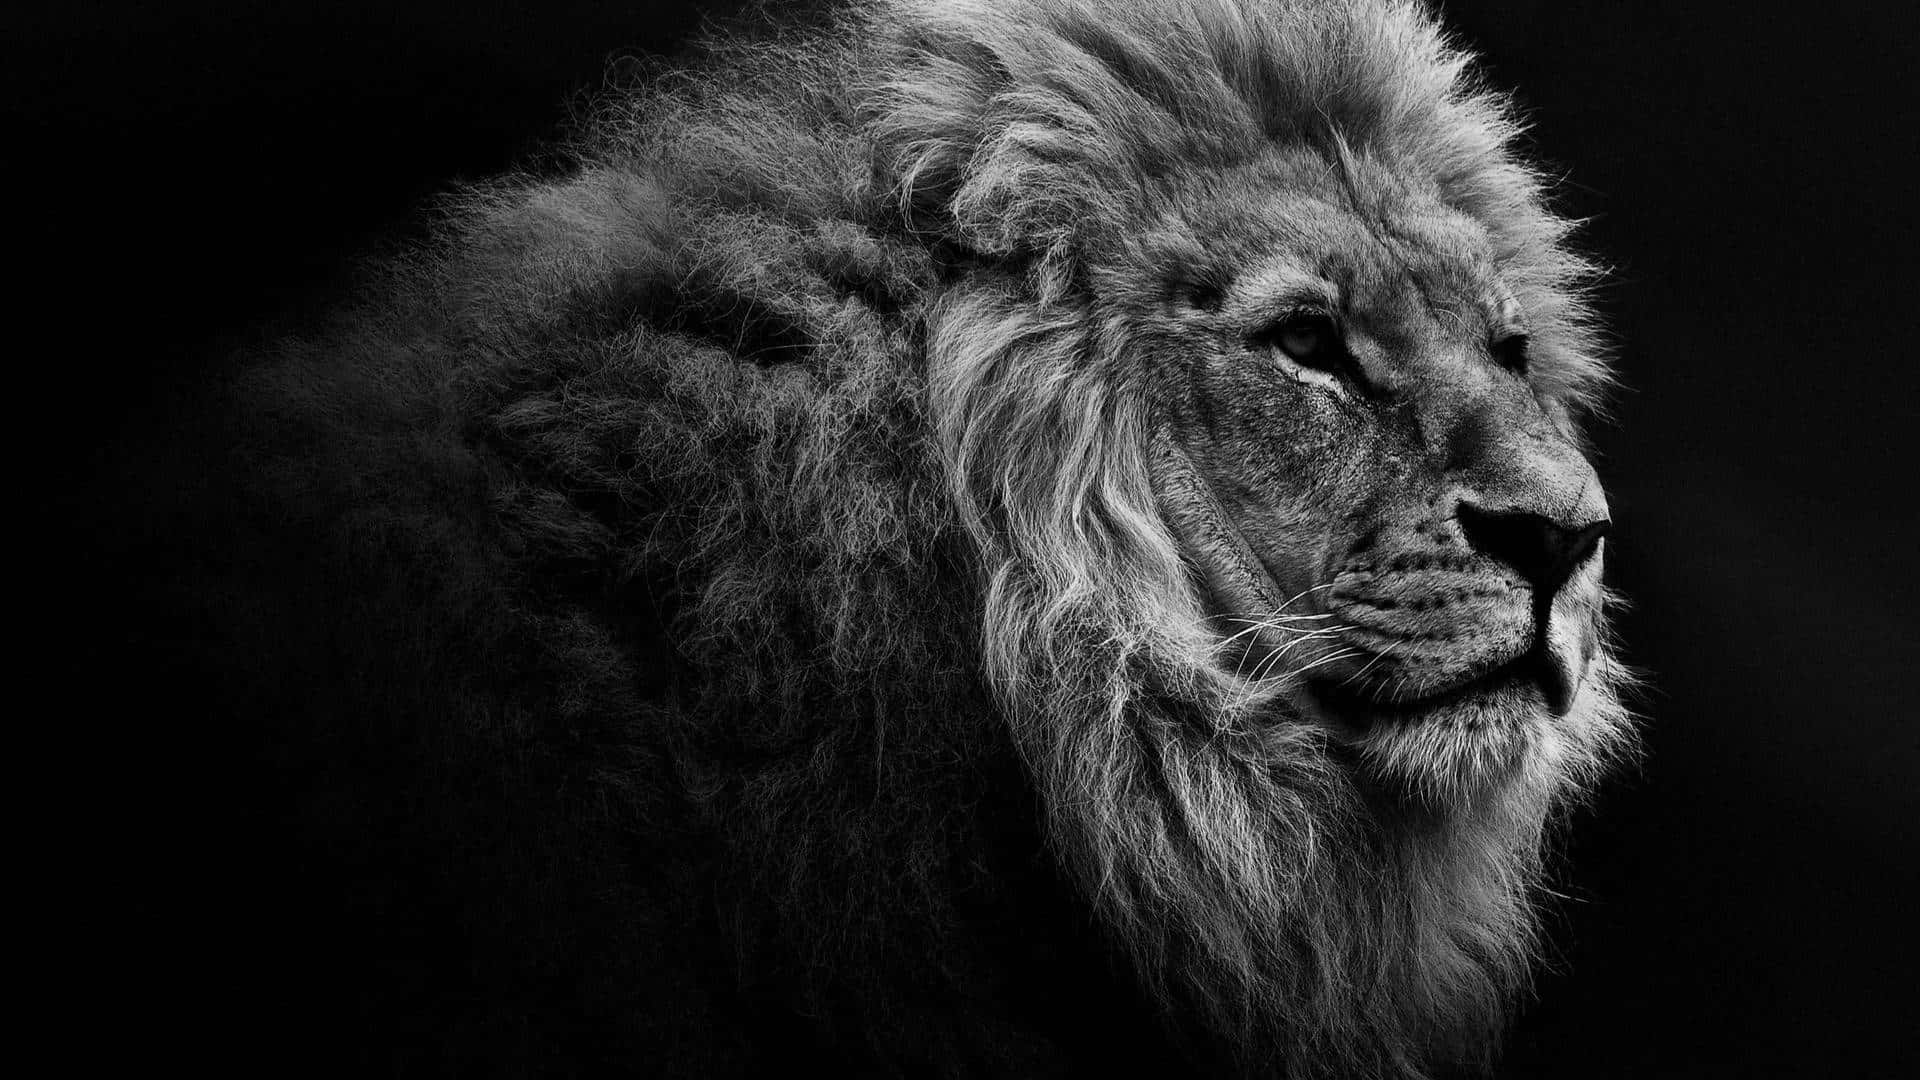 Show Your Roar - The Majestic Black Lion